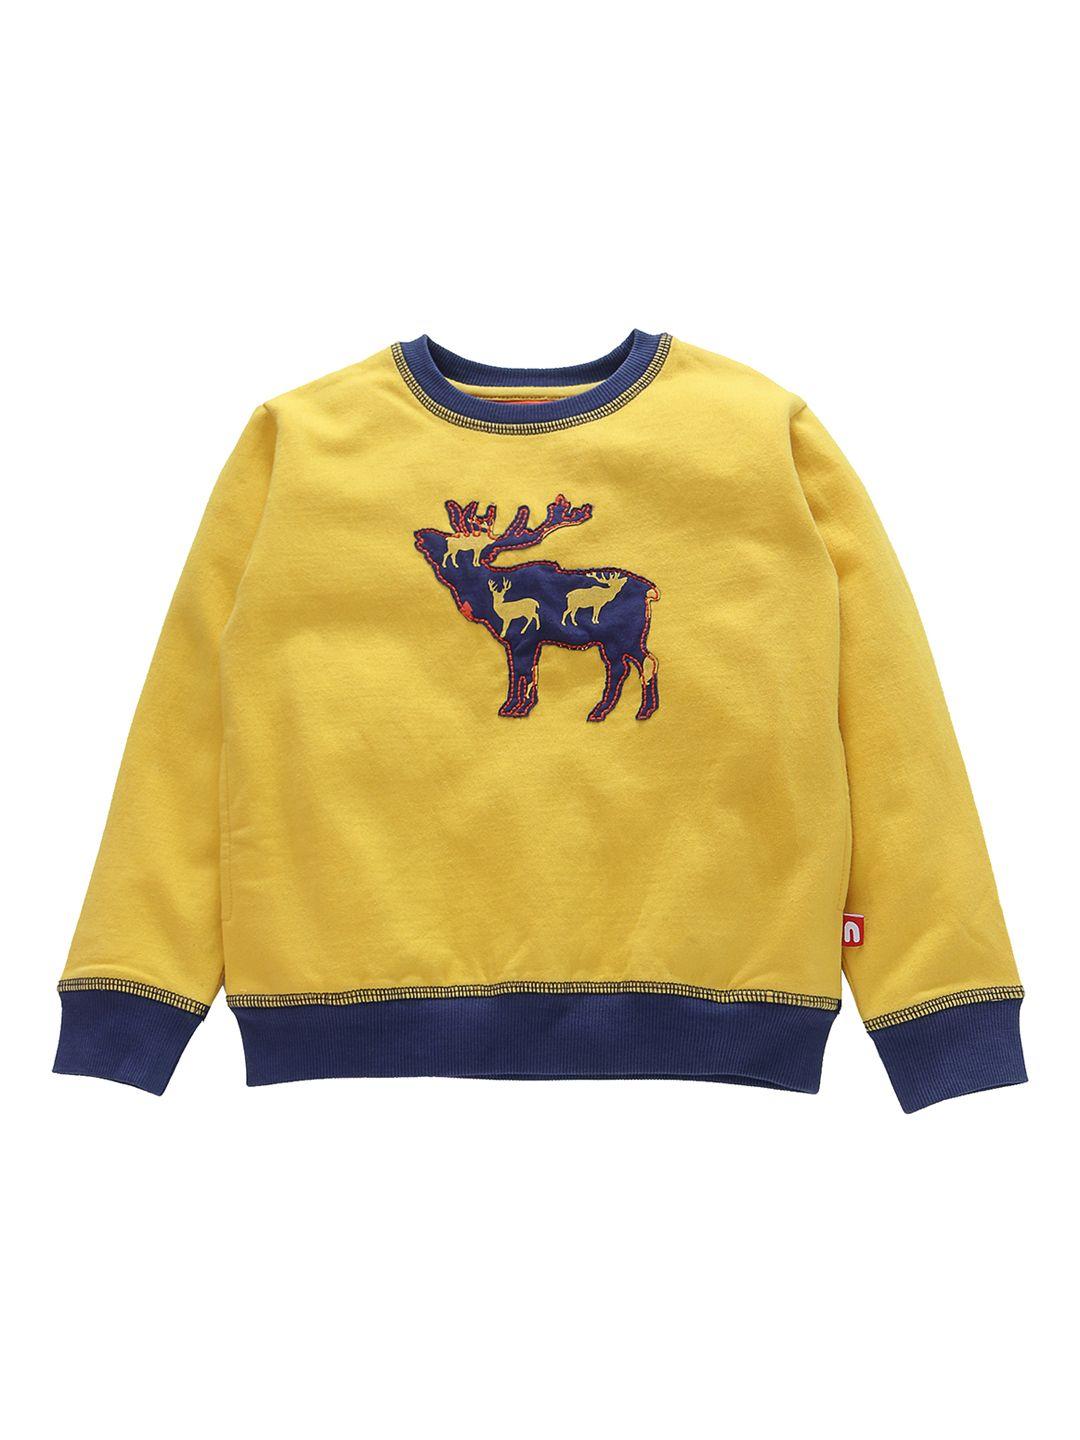 nino bambino boys organic cotton yellow self design sweatshirt